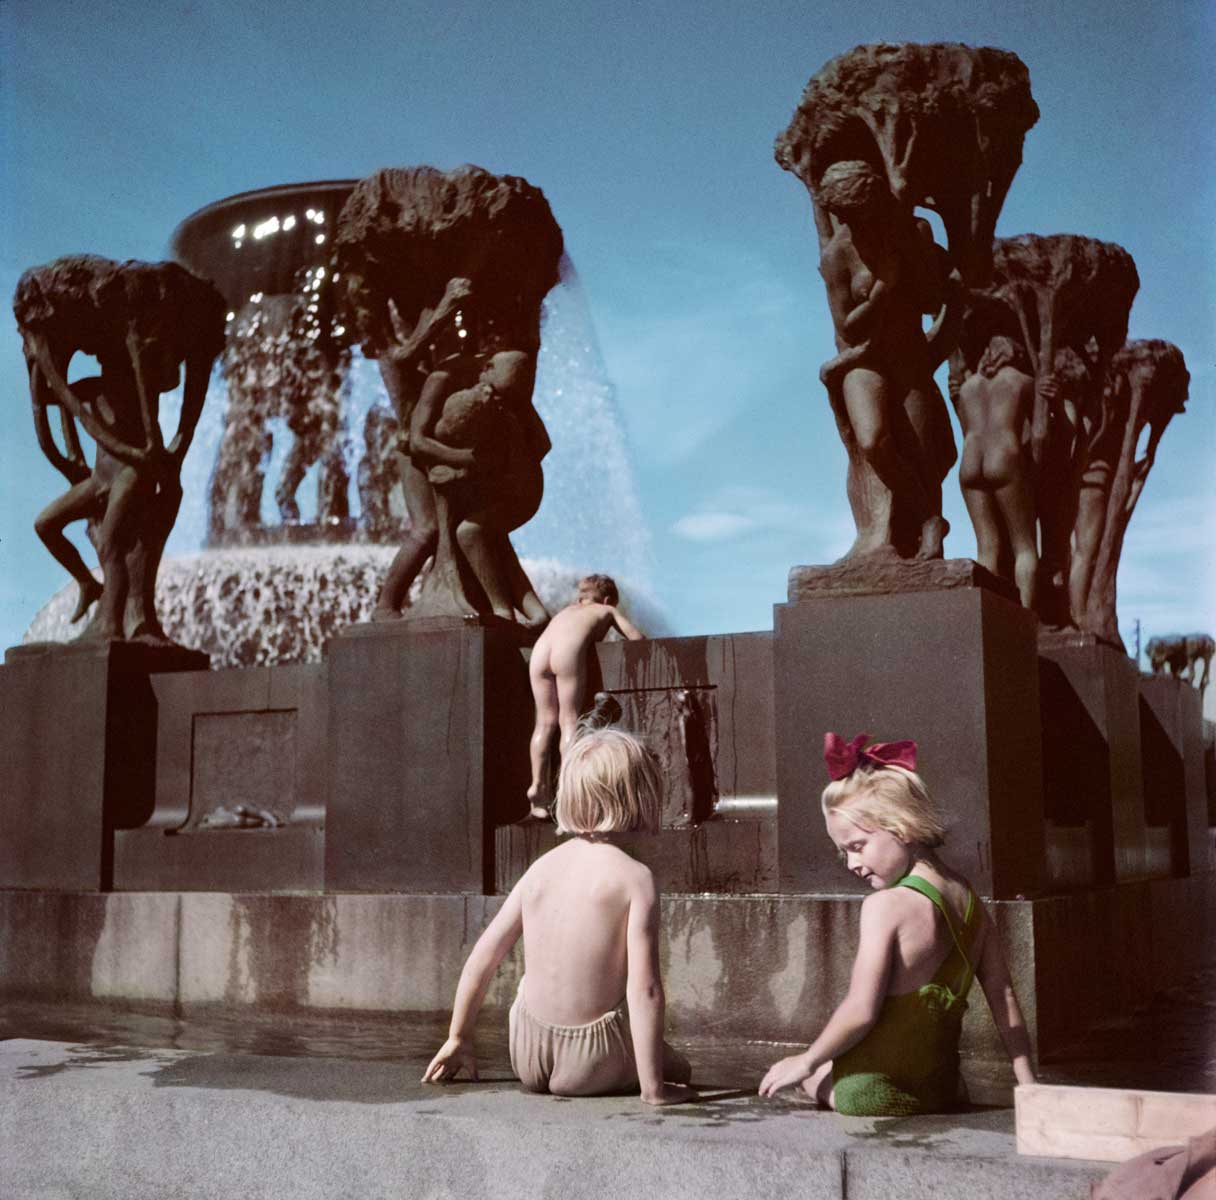 Children play in the Gustav Vieglund Sculpture Park, Oslo, Norway, 1951.